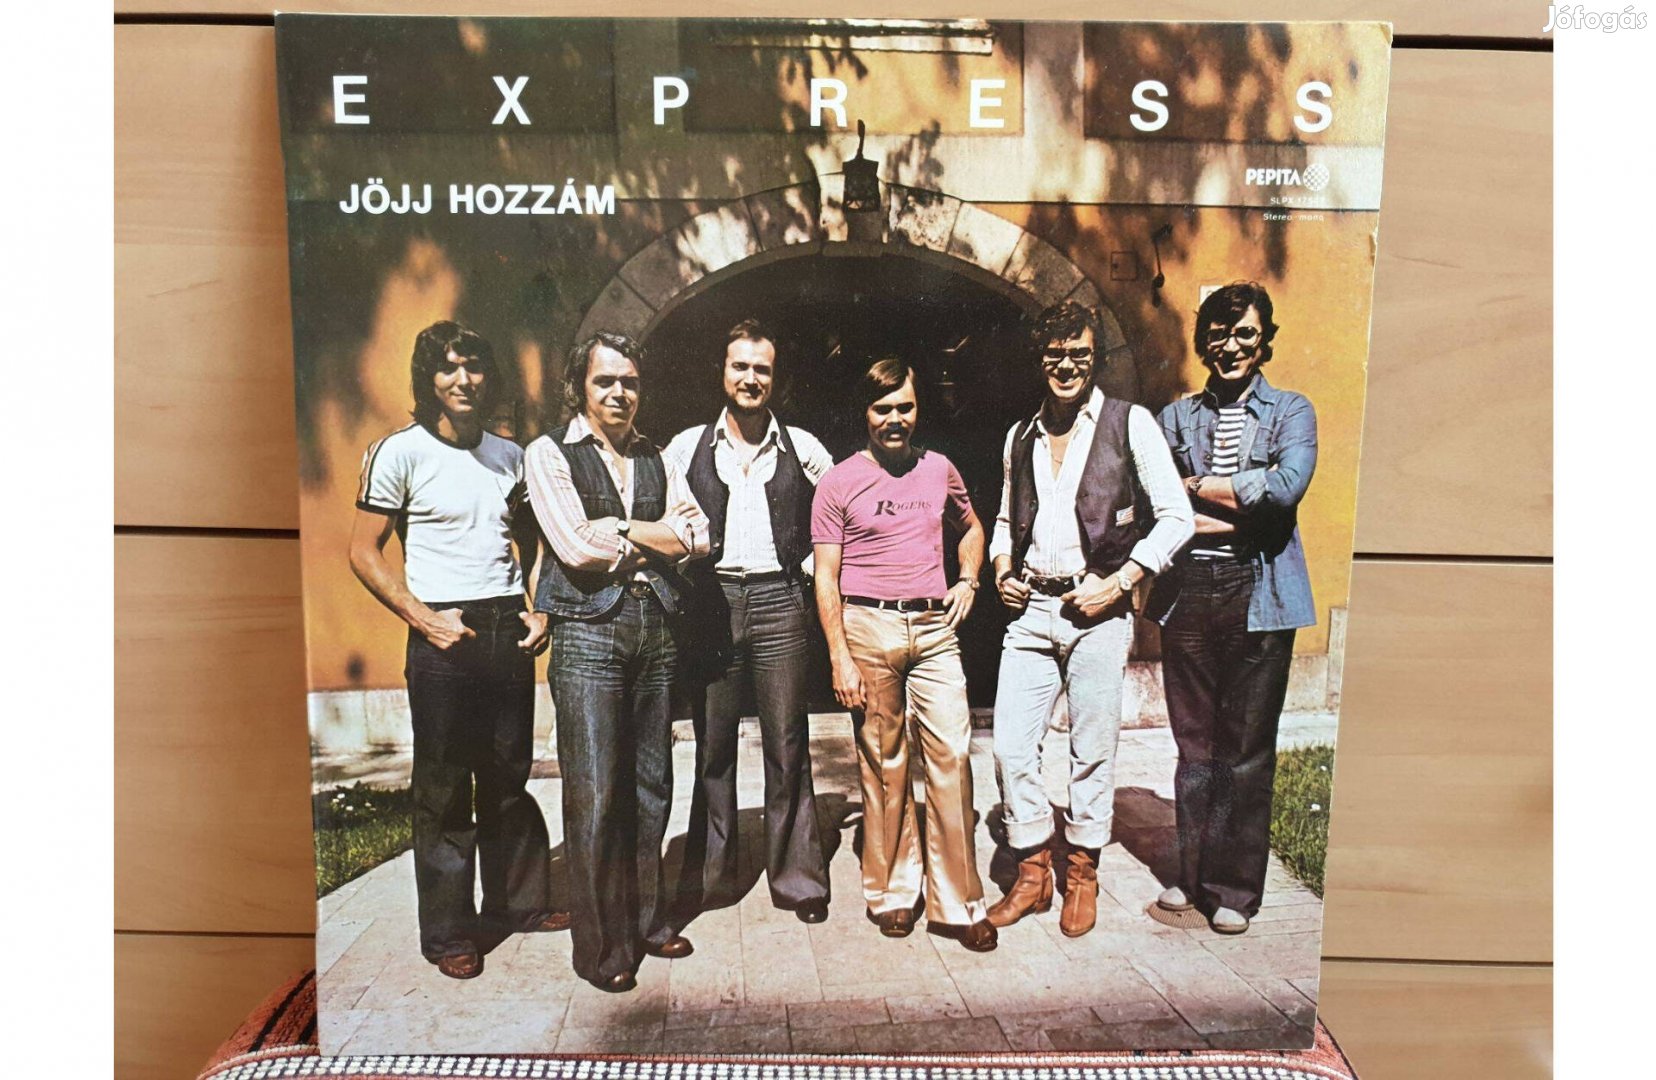 Express - Jöjj hozzám hanglemez bakelit lemez Vinyl